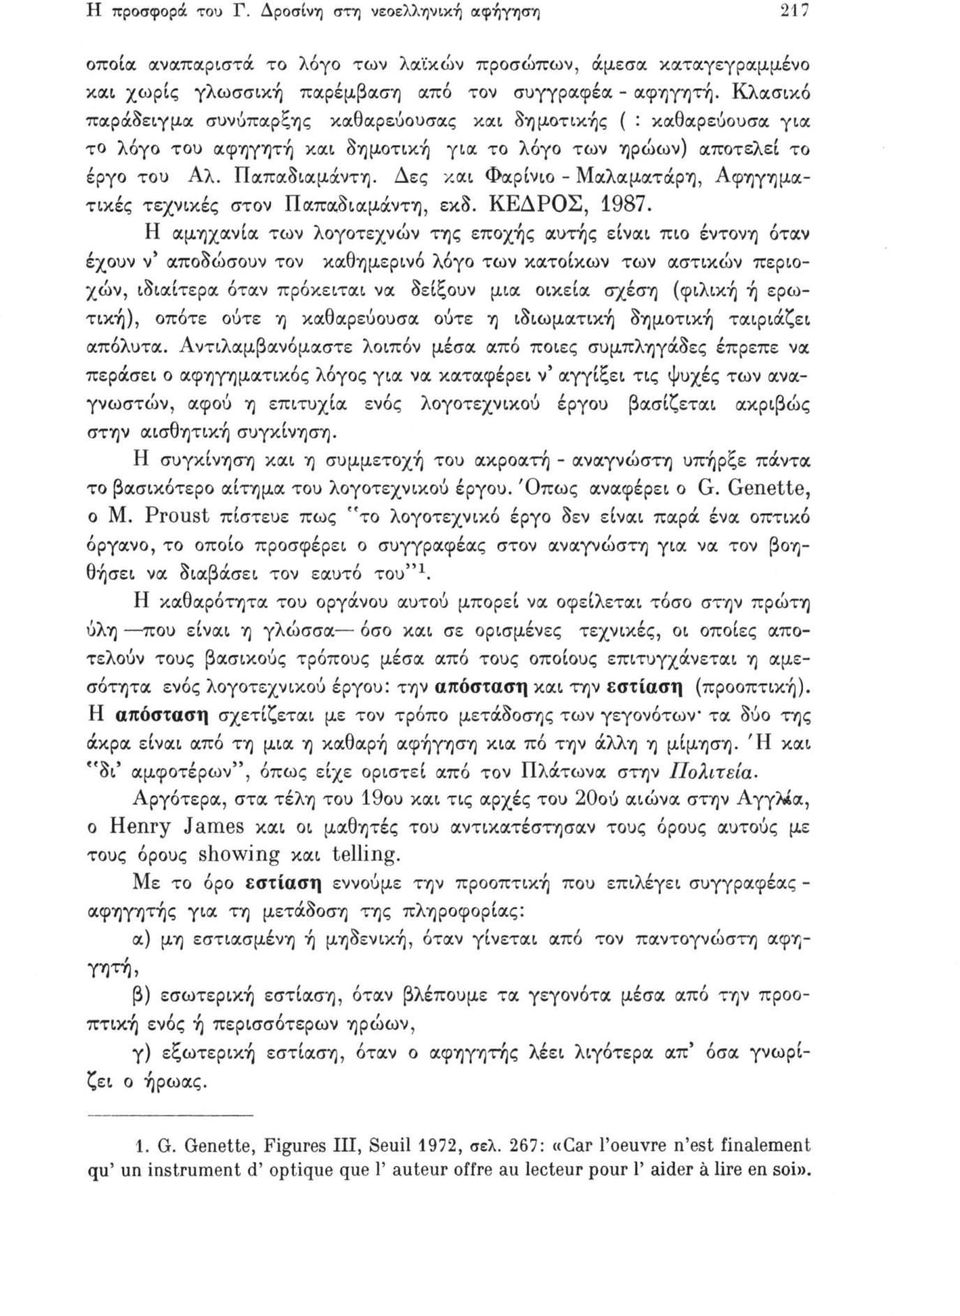 Δες και Φαρίνιο - Μαλαματάρη, Αφηγηματικές τεχνικές στον Παπαδιαμάντη, εκδ. ΚΕΔΡΟΣ, 1987.